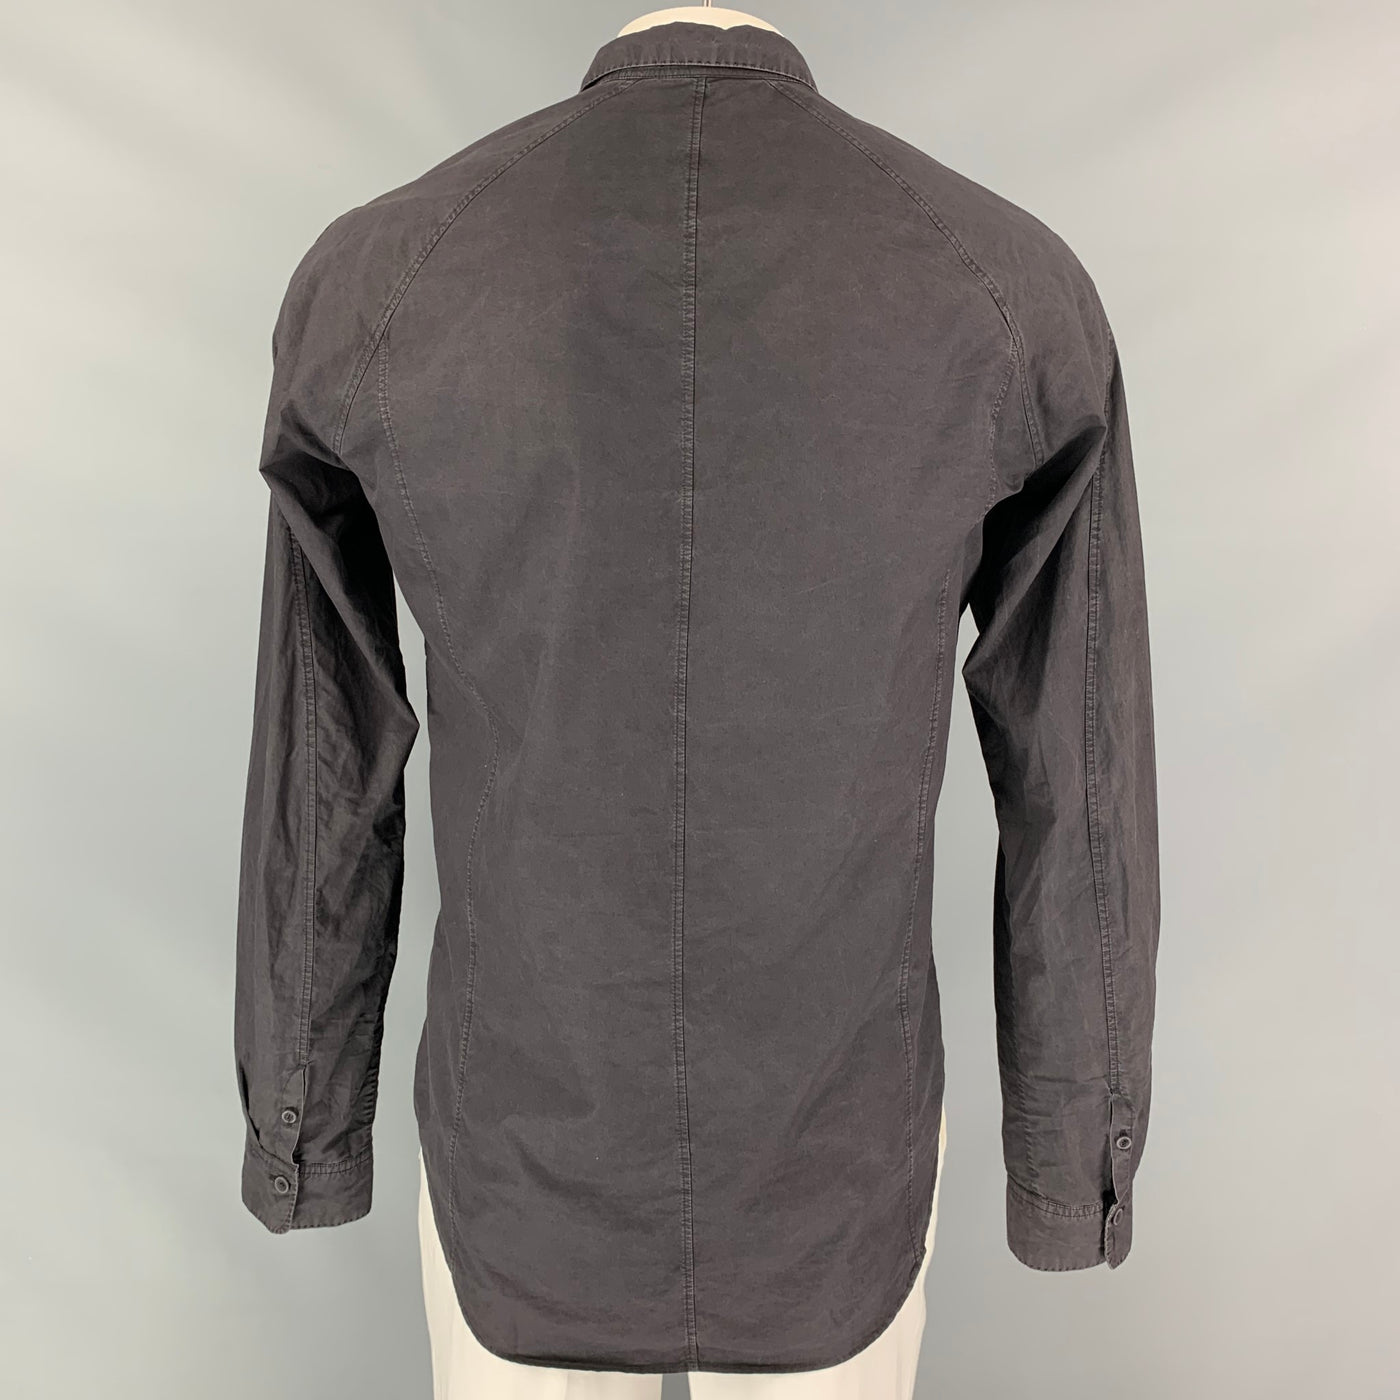 THE VIRIDI-ANNE Size 44 Black Cotton Hidden Buttons Long Sleeve Shirt